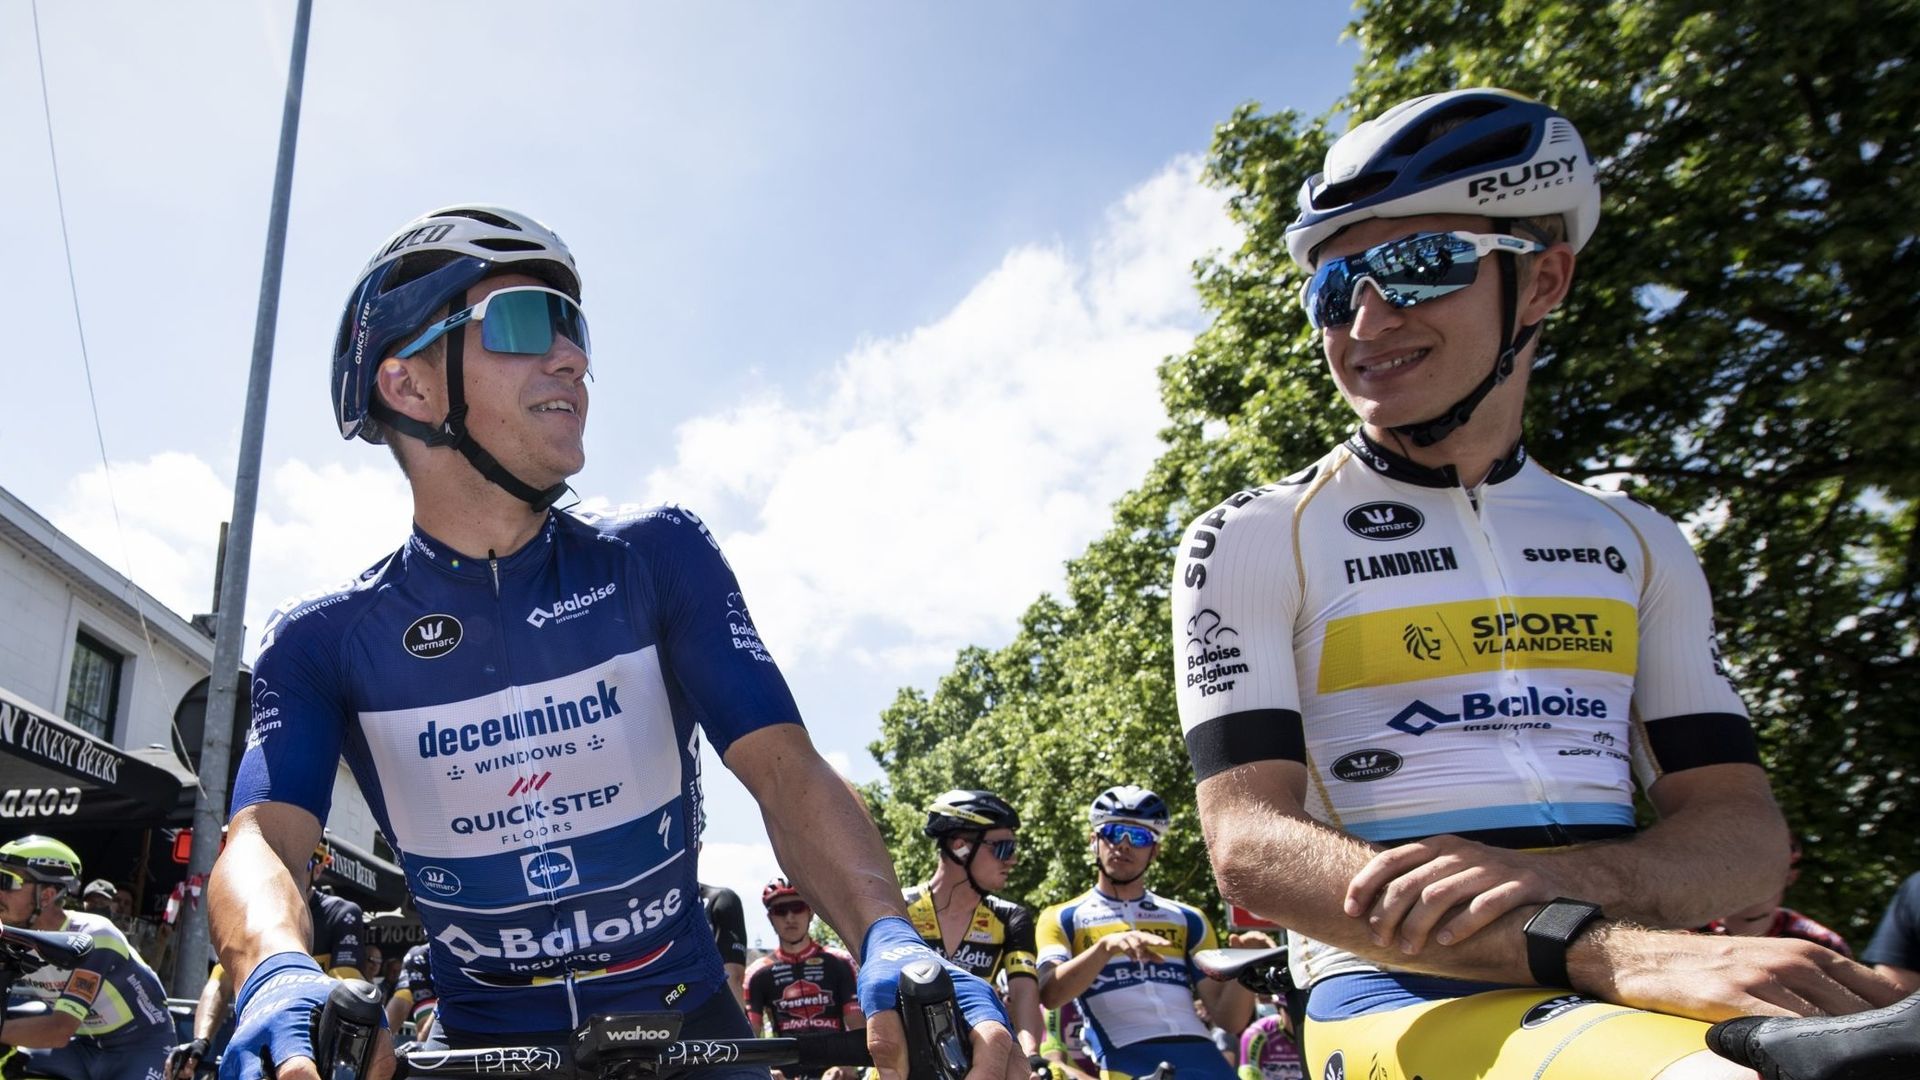 Rune Herregodts, le coureur Belge de Sport Vlaanderen-Baloise, a remporté le premier succès de sa carrière. On le voit (à droite) au départ de la 3e étape du tour de Belgique aux côtés de Remco Evenepoel.